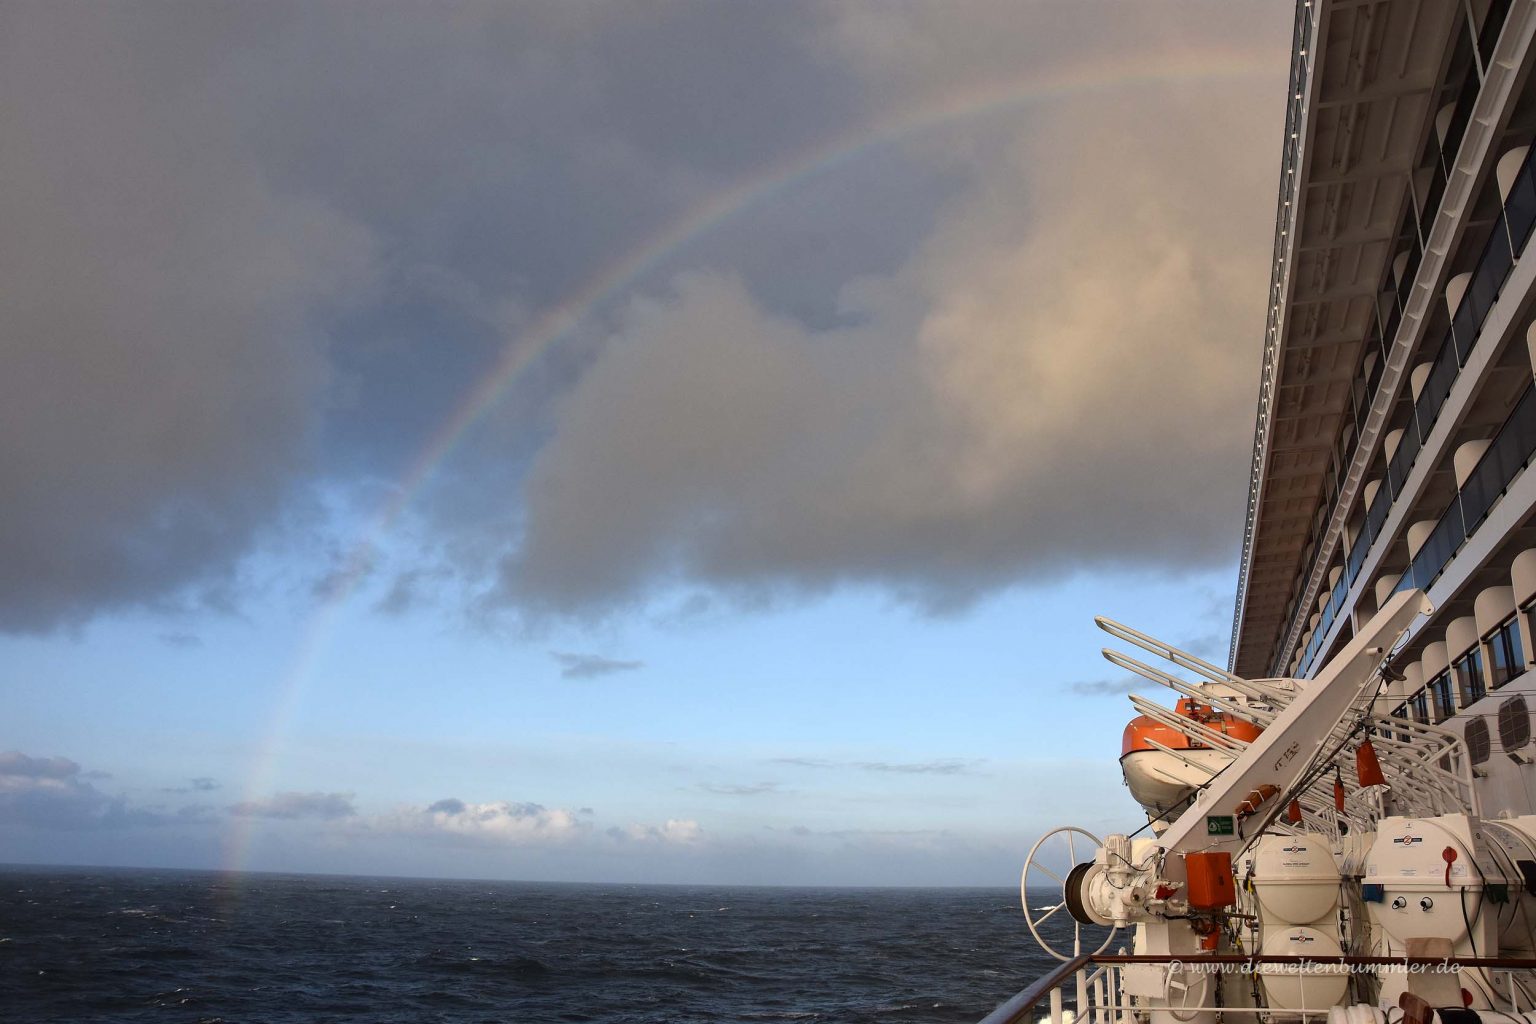 Regenbogen über dem Schiff